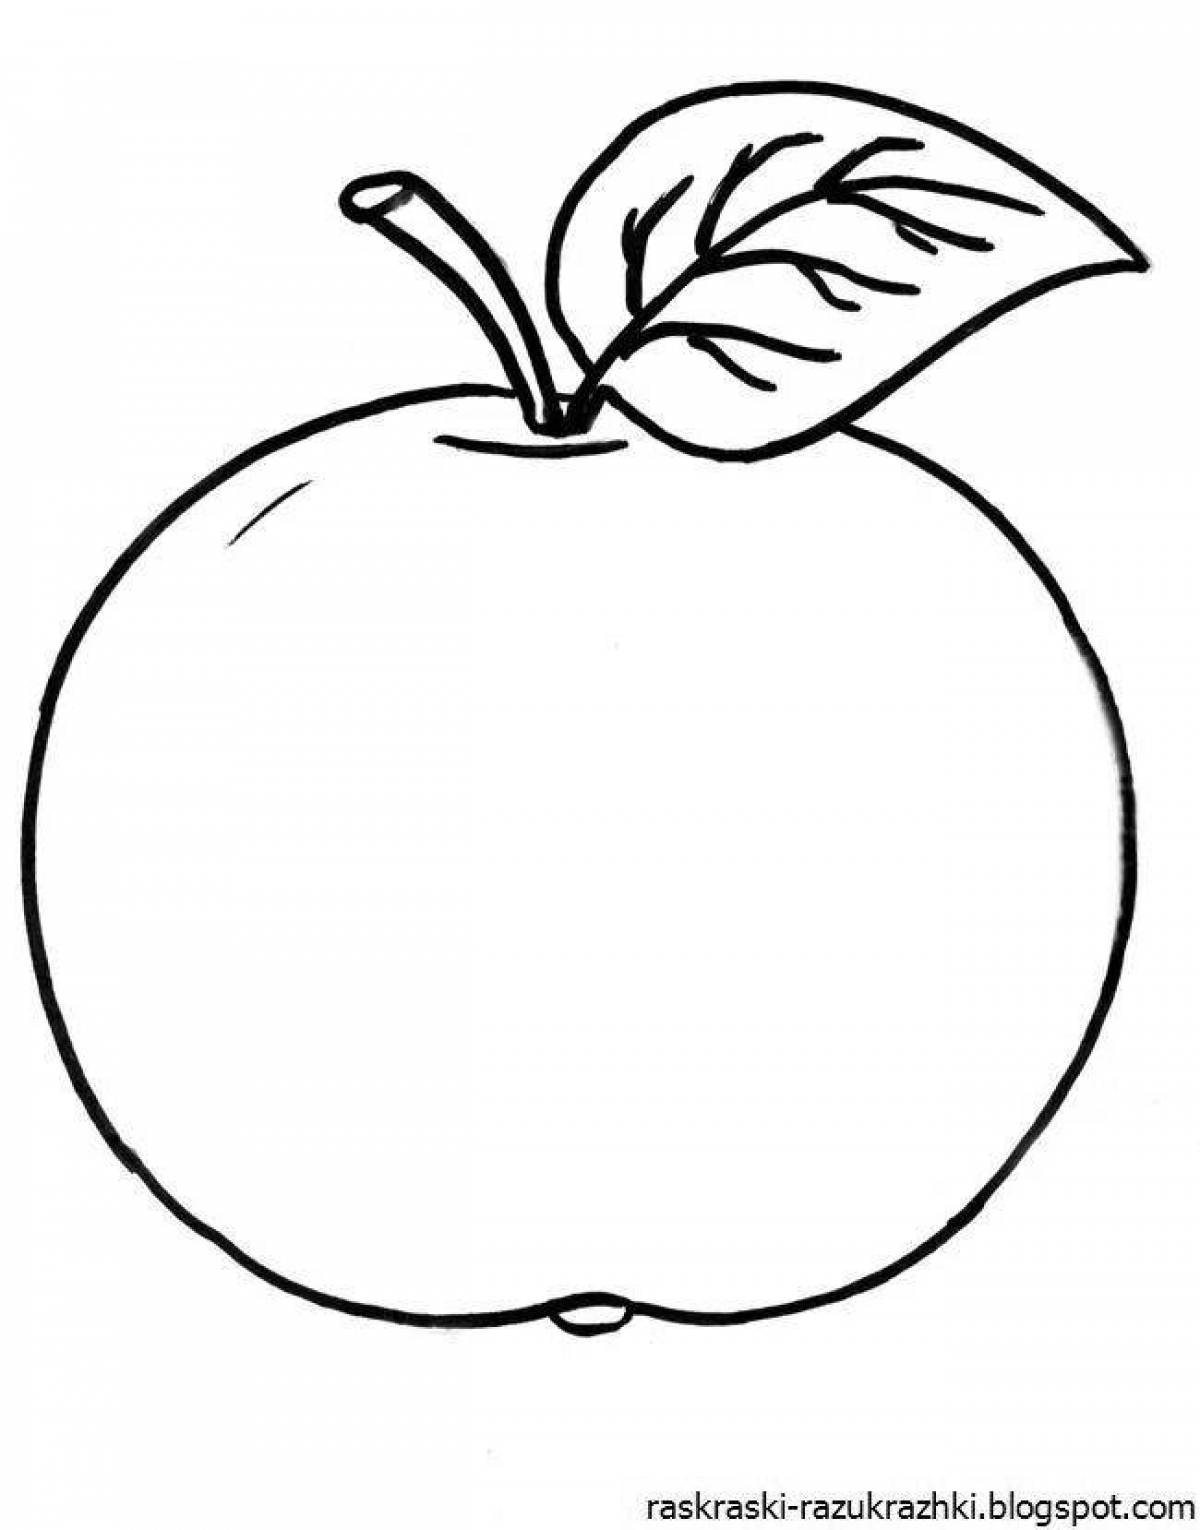 Восхитительный рисунок яблока